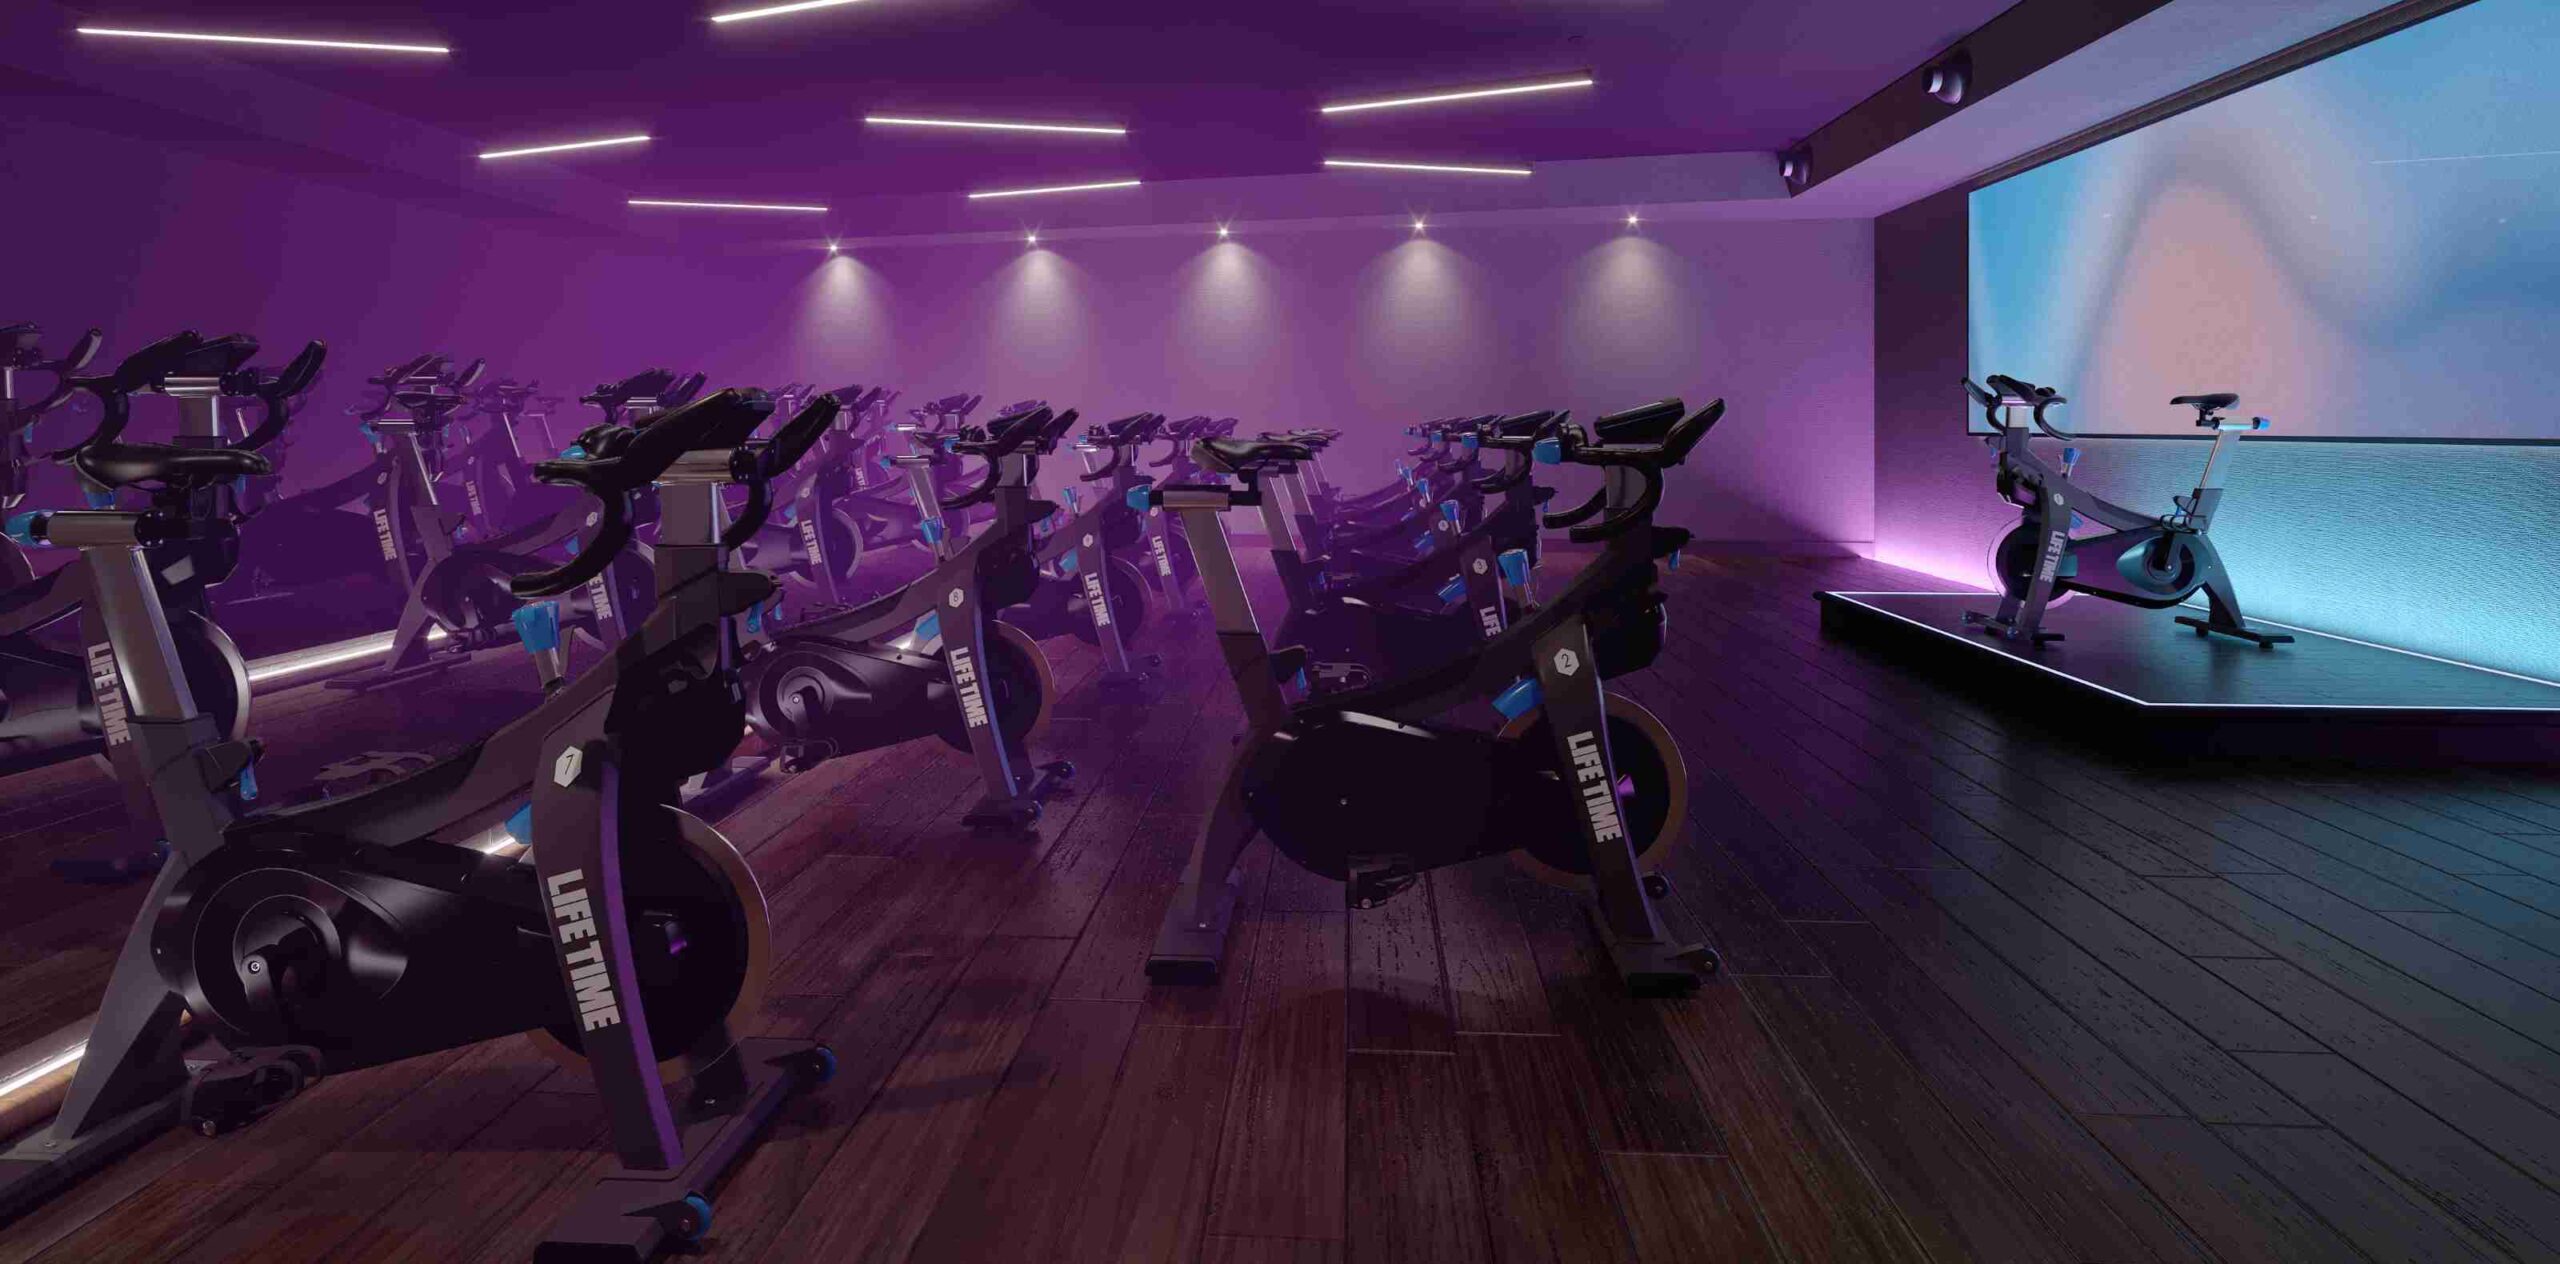 indoor cycle studio